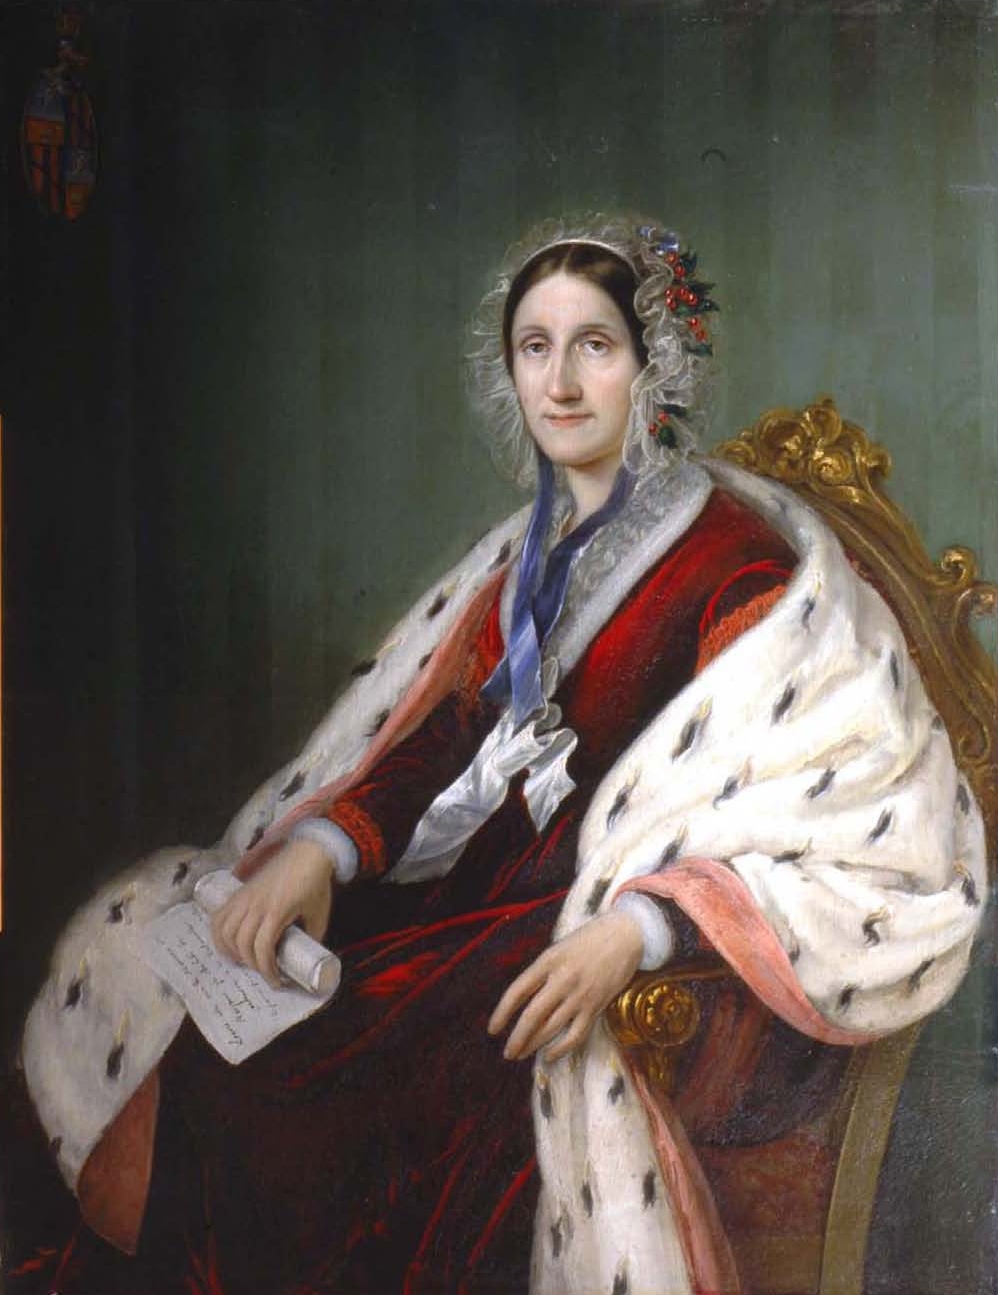 Flaminia De Vecchi nel ritratto di G. Rillosi